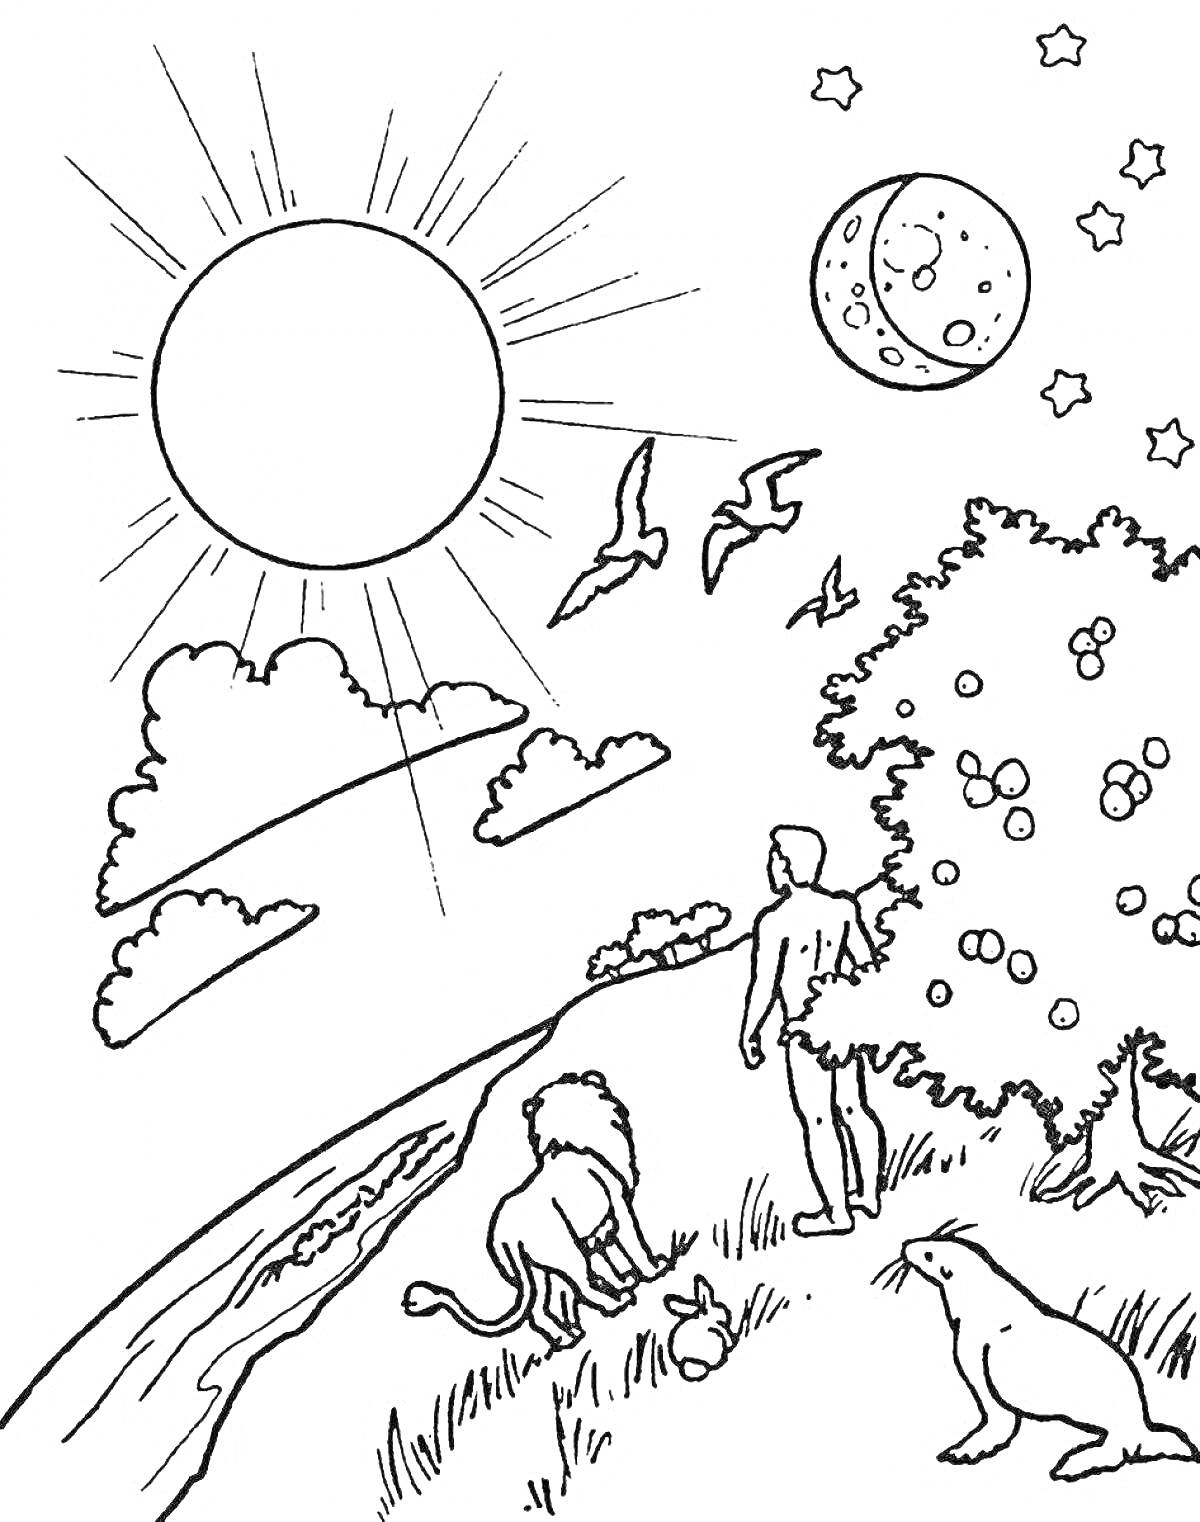 Раскраска Сотворение мира: человек, лев, заяц, птицы, луна, звезды, солнце, дерево с плодами, рекa и небо с облаками